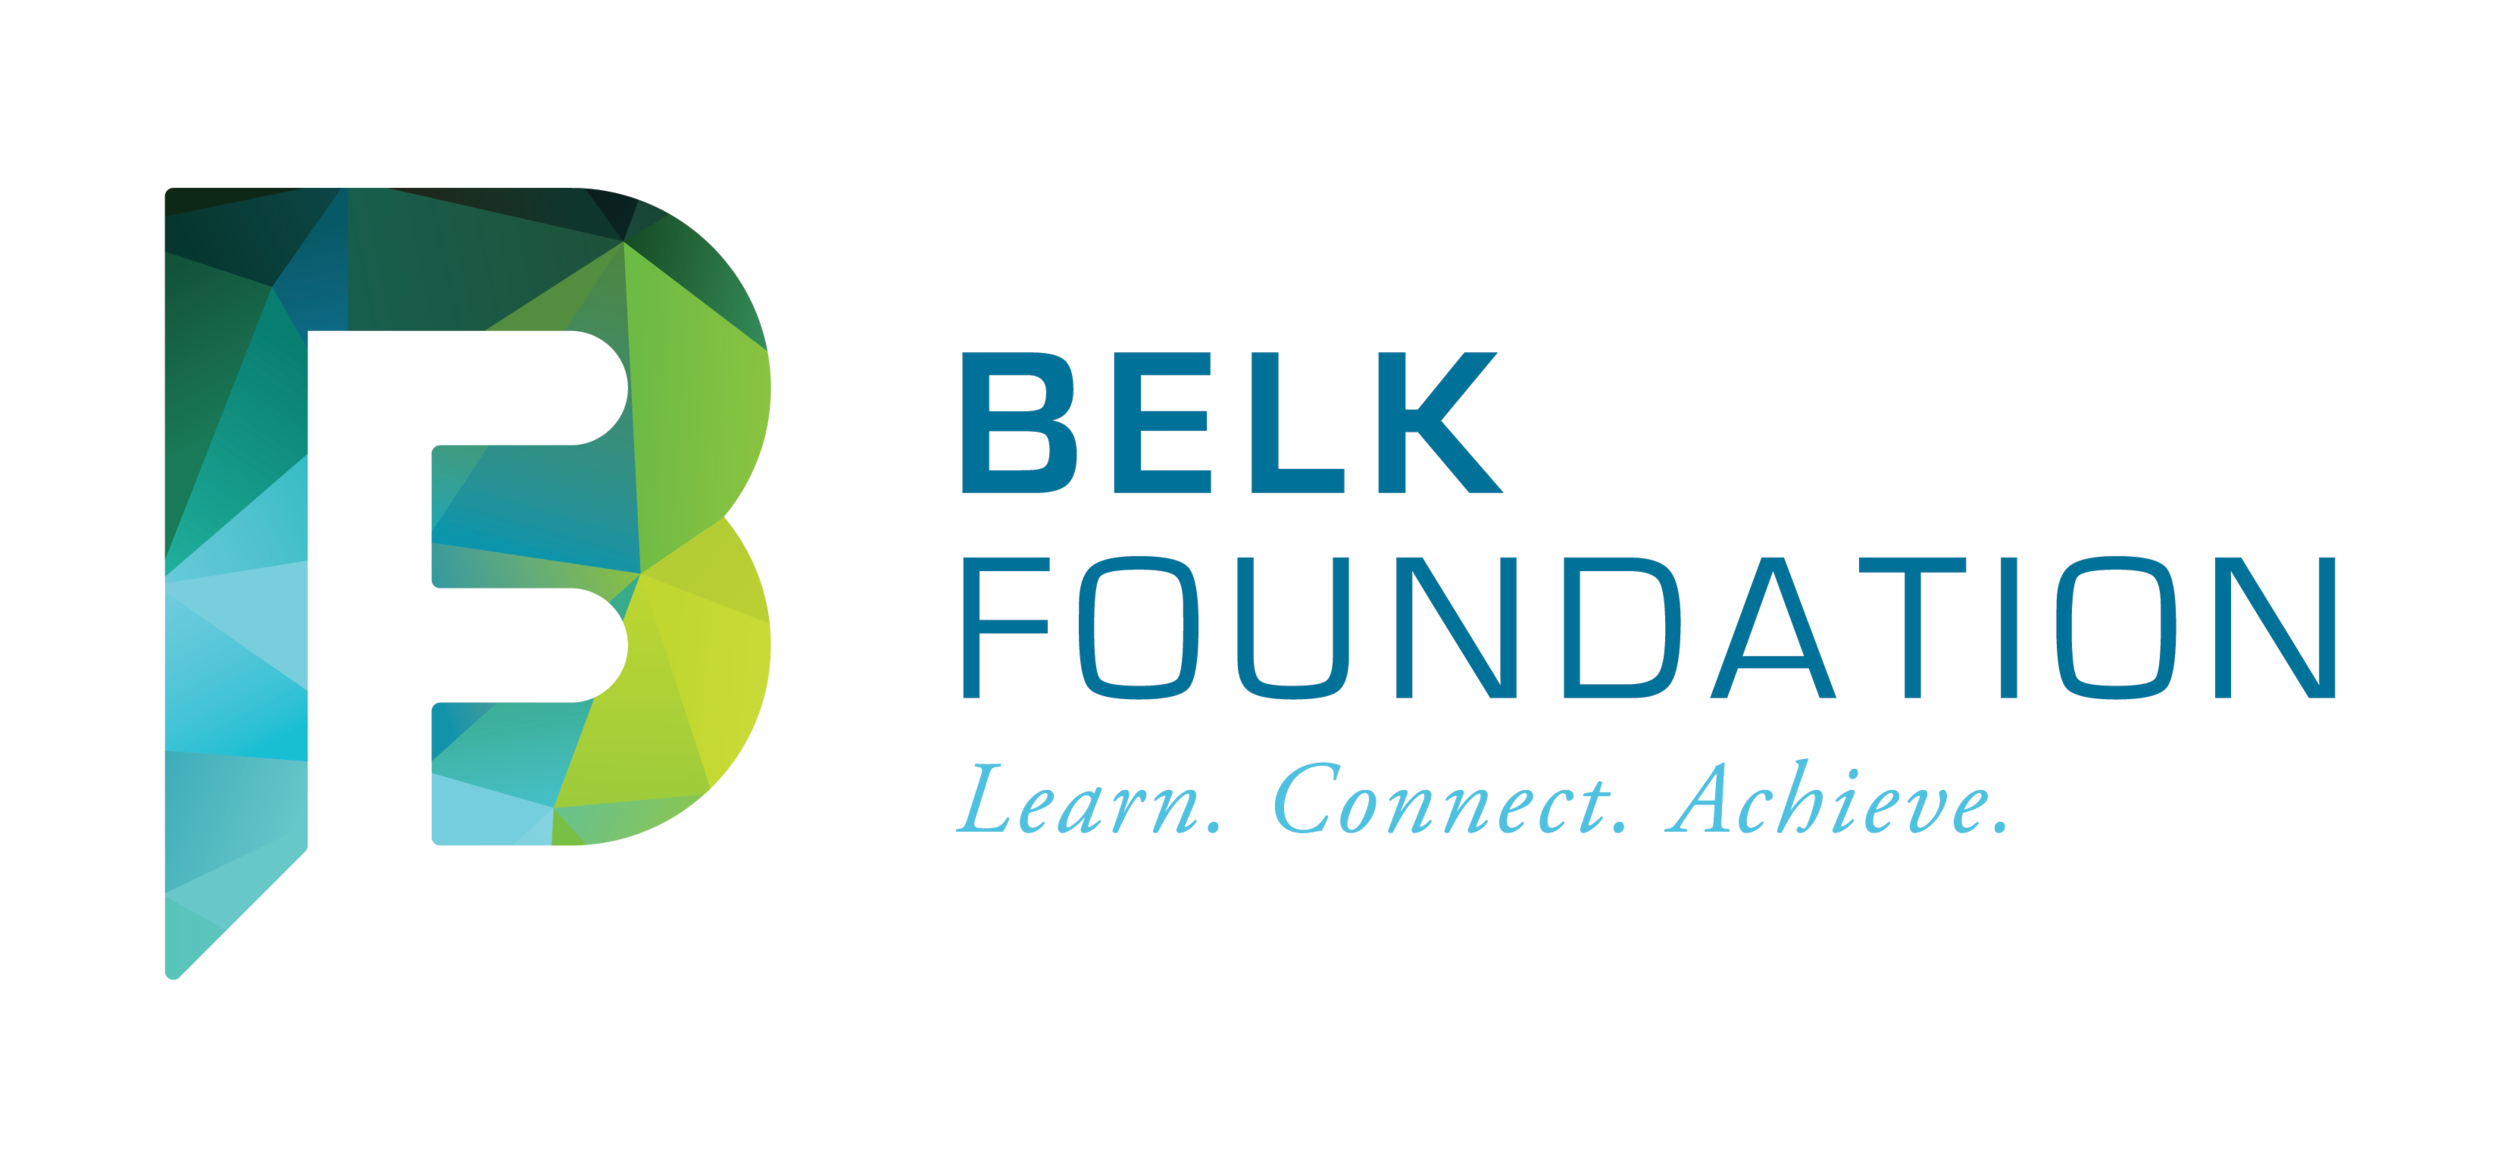 new-belk-logo-transparent.png